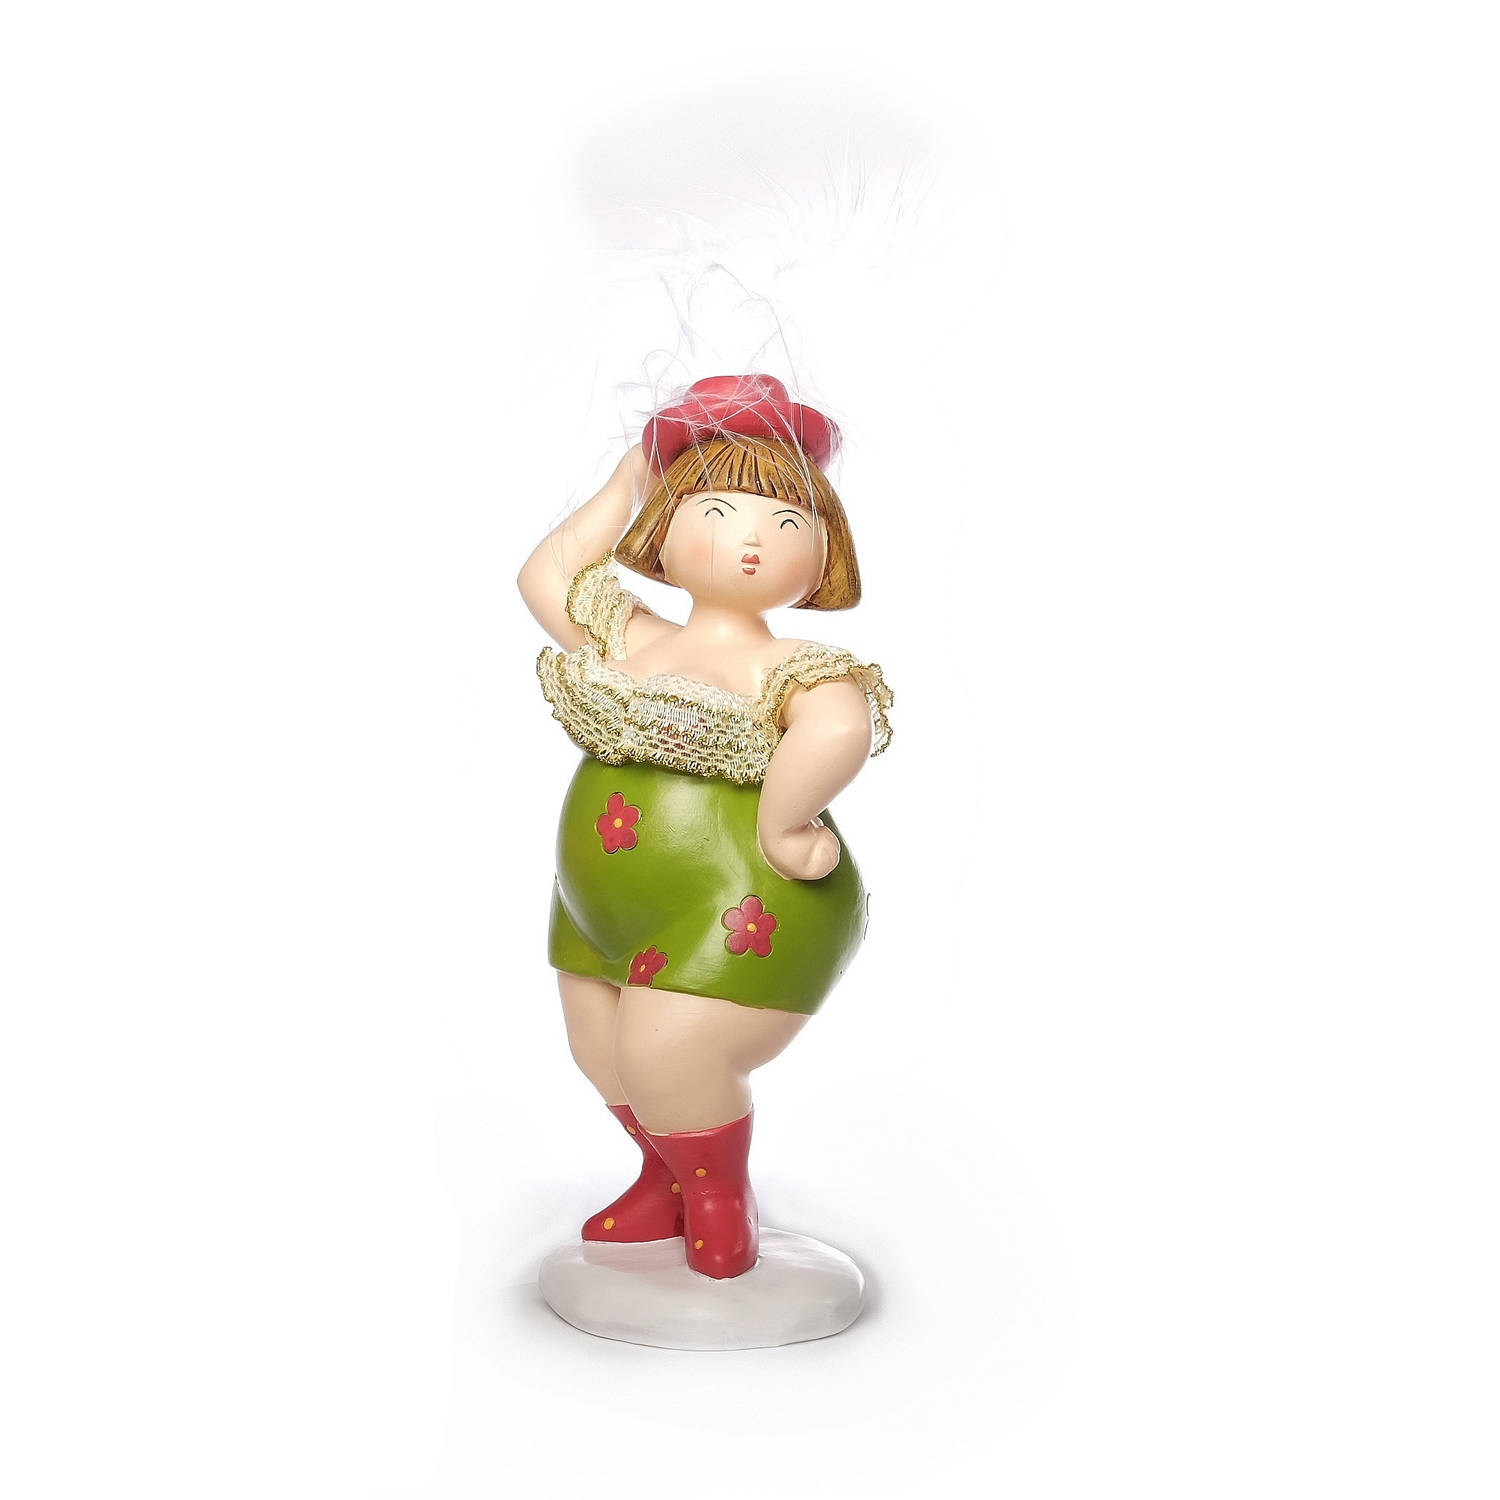 Inware Home decoratie beeldje dikke dame staand jurk groen 20 cm Beeldjes